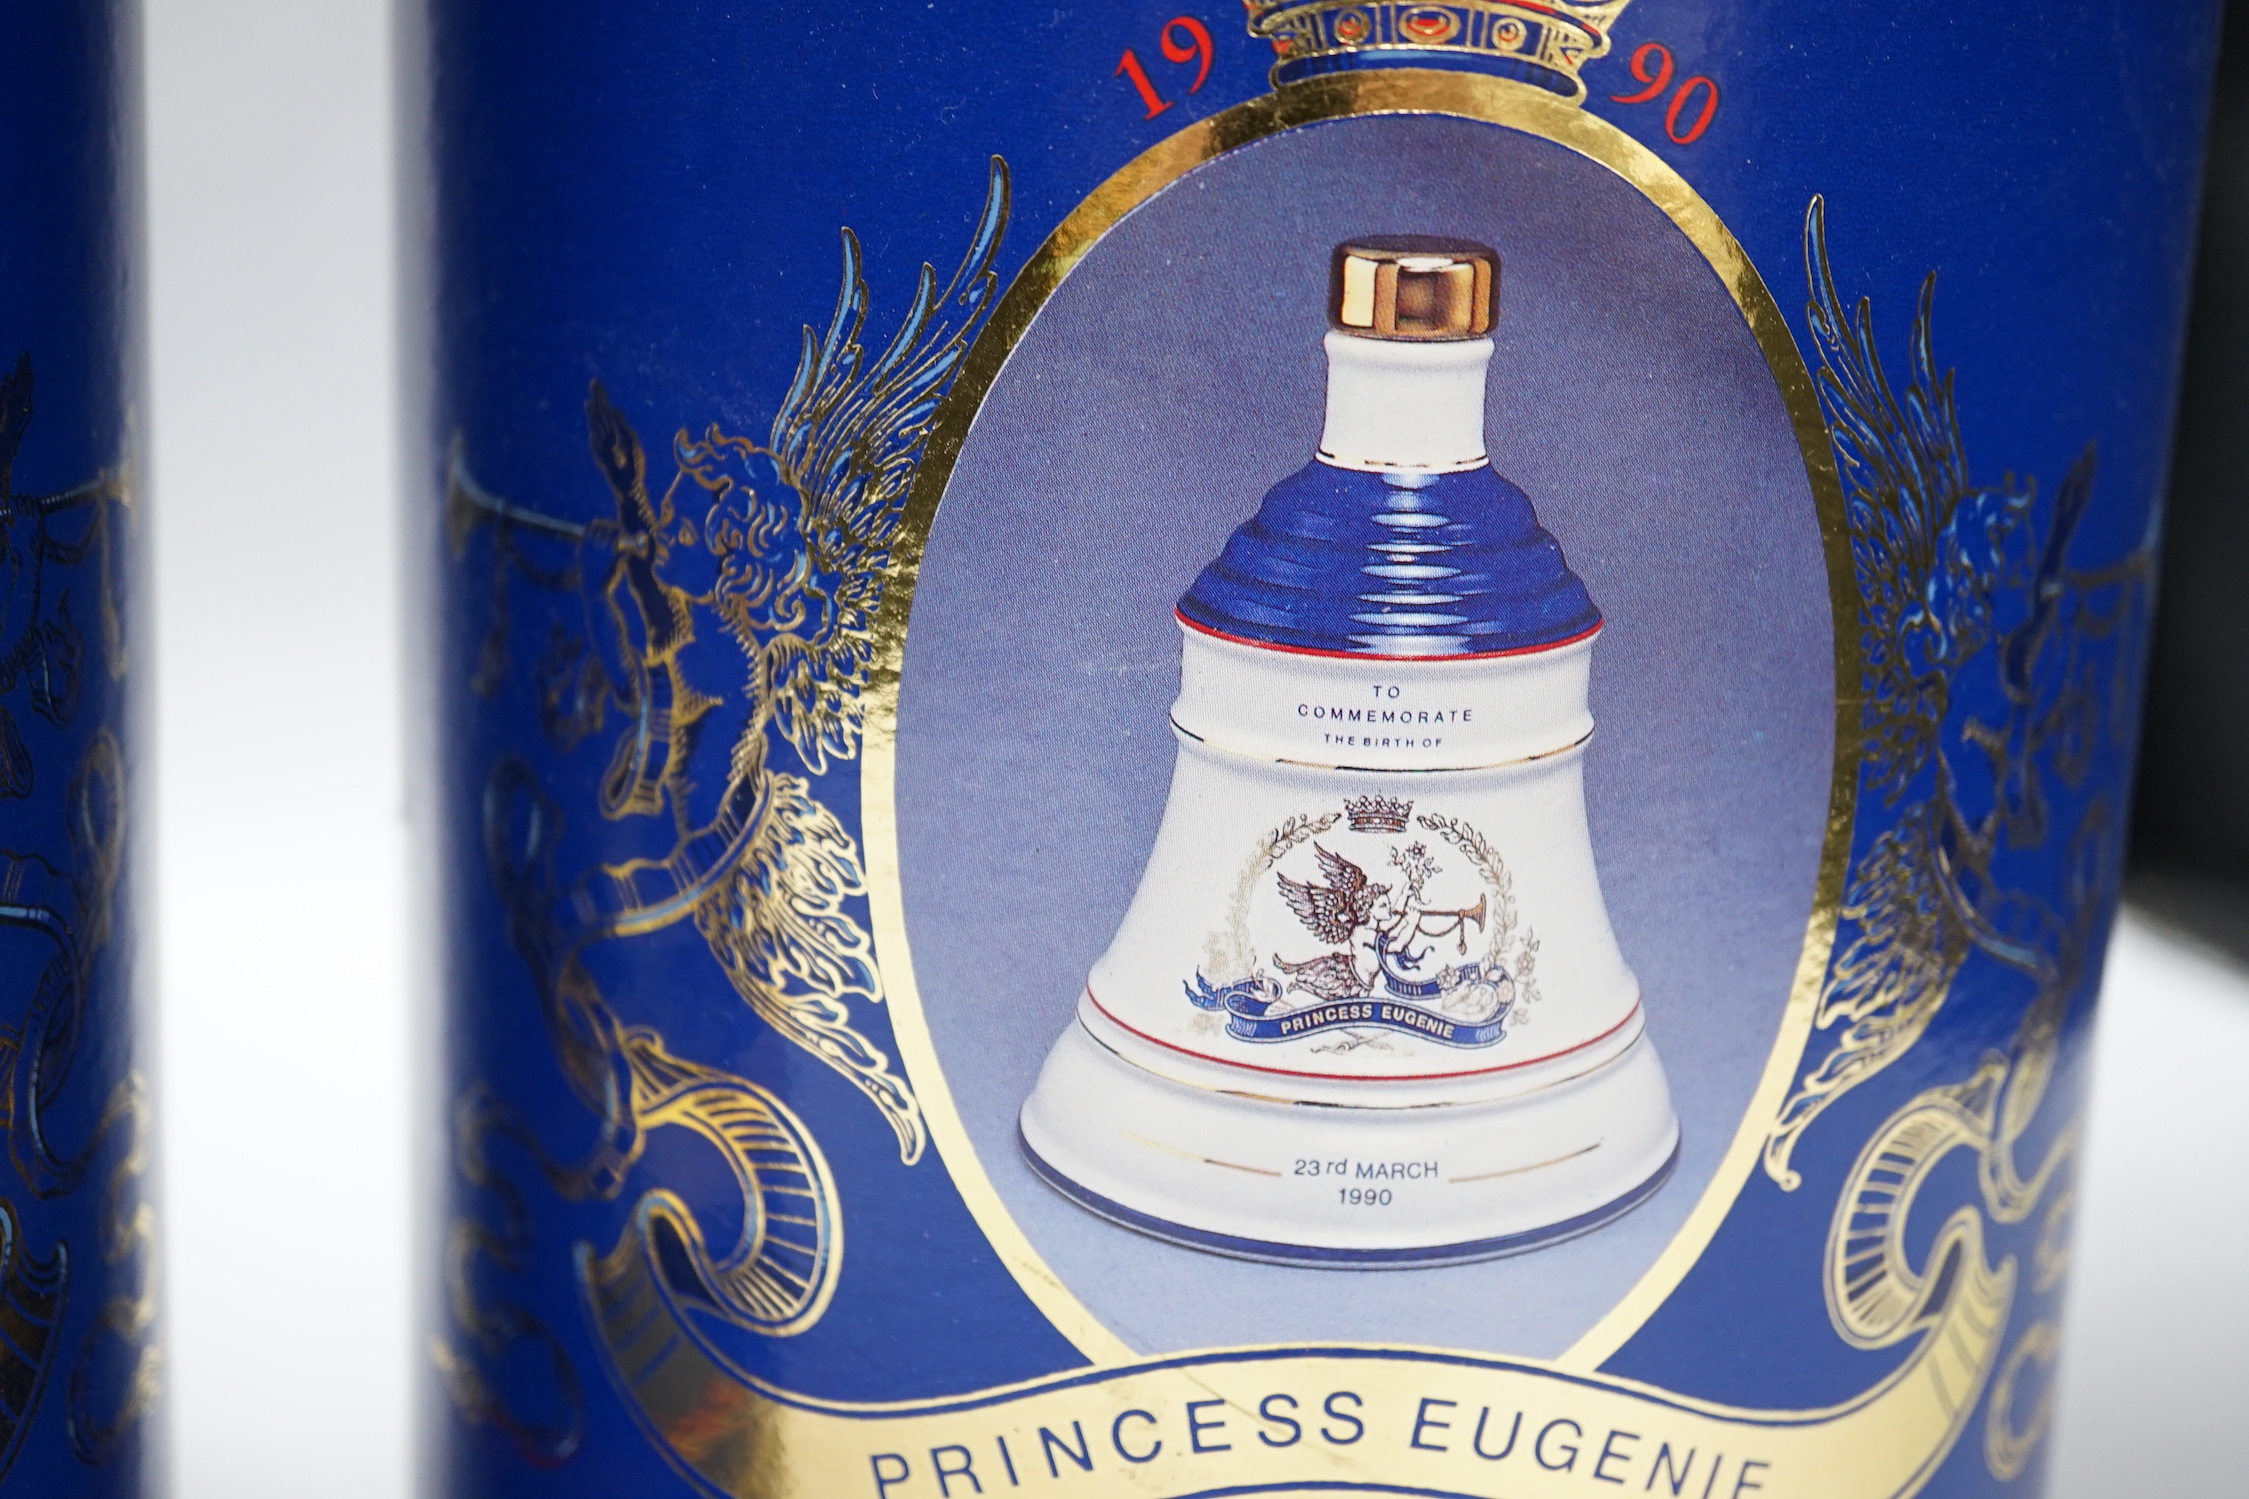 Four Royal themed Bell's whisky bottles